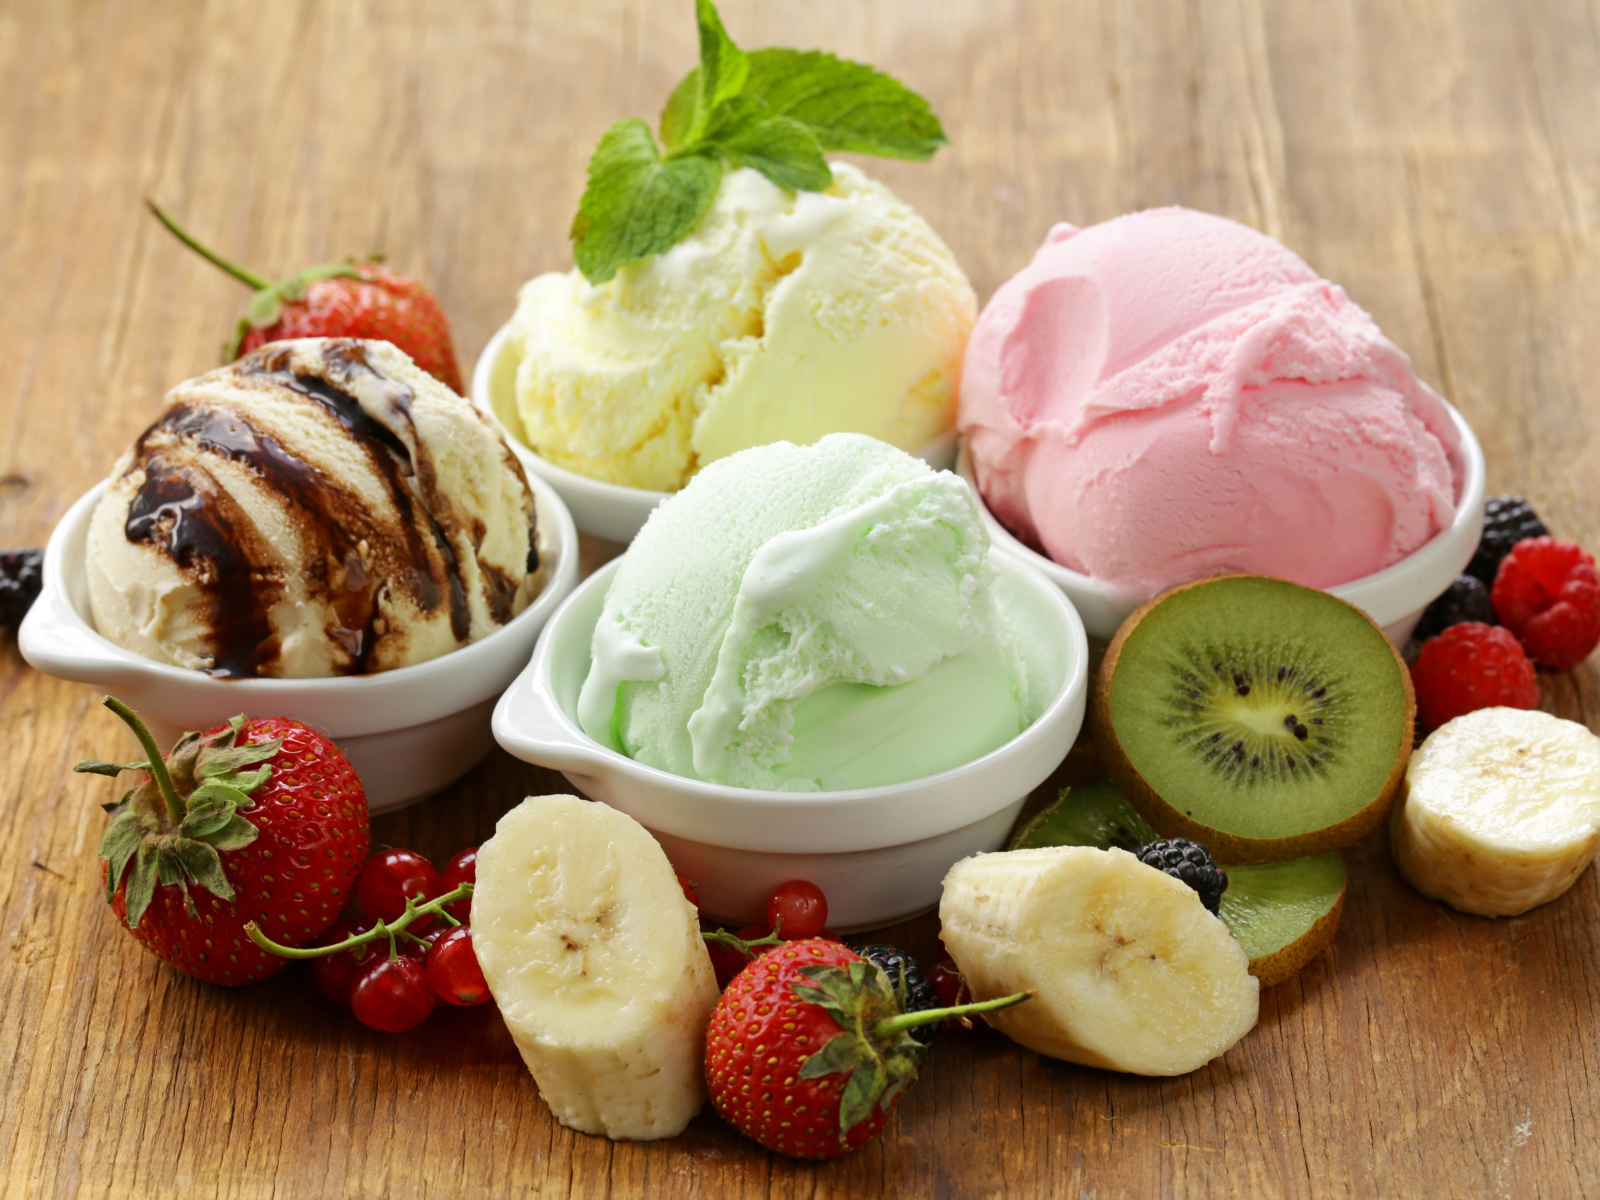 Шарики фруктового мороженого со свежими фруктами и ягодами